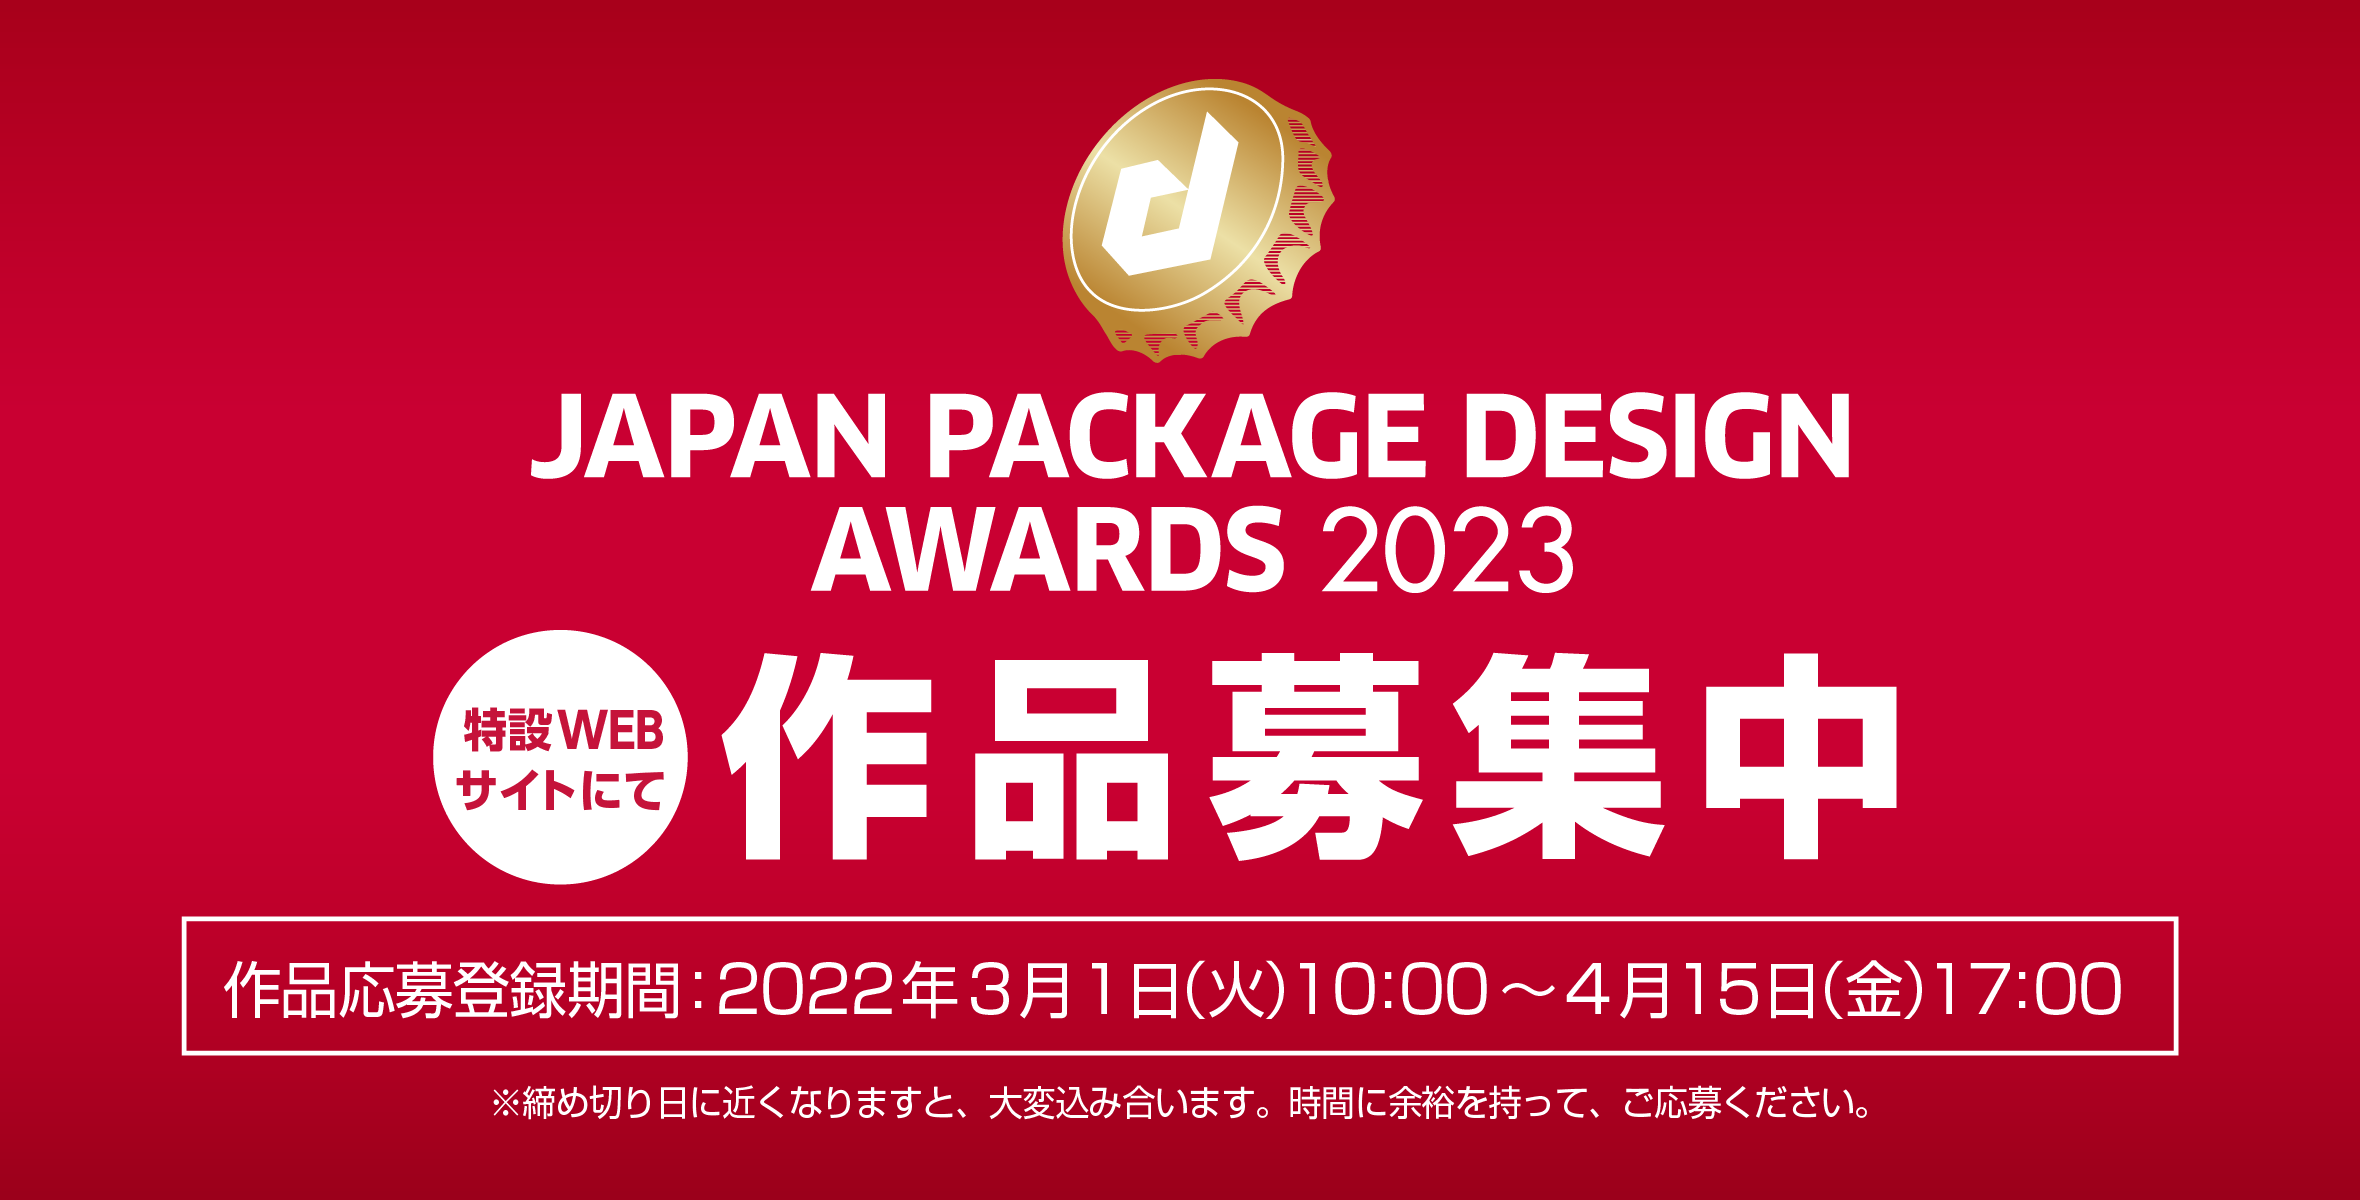 日本パッケージデザイン大賞2023 《作品募集》開始のお知らせのイメージ